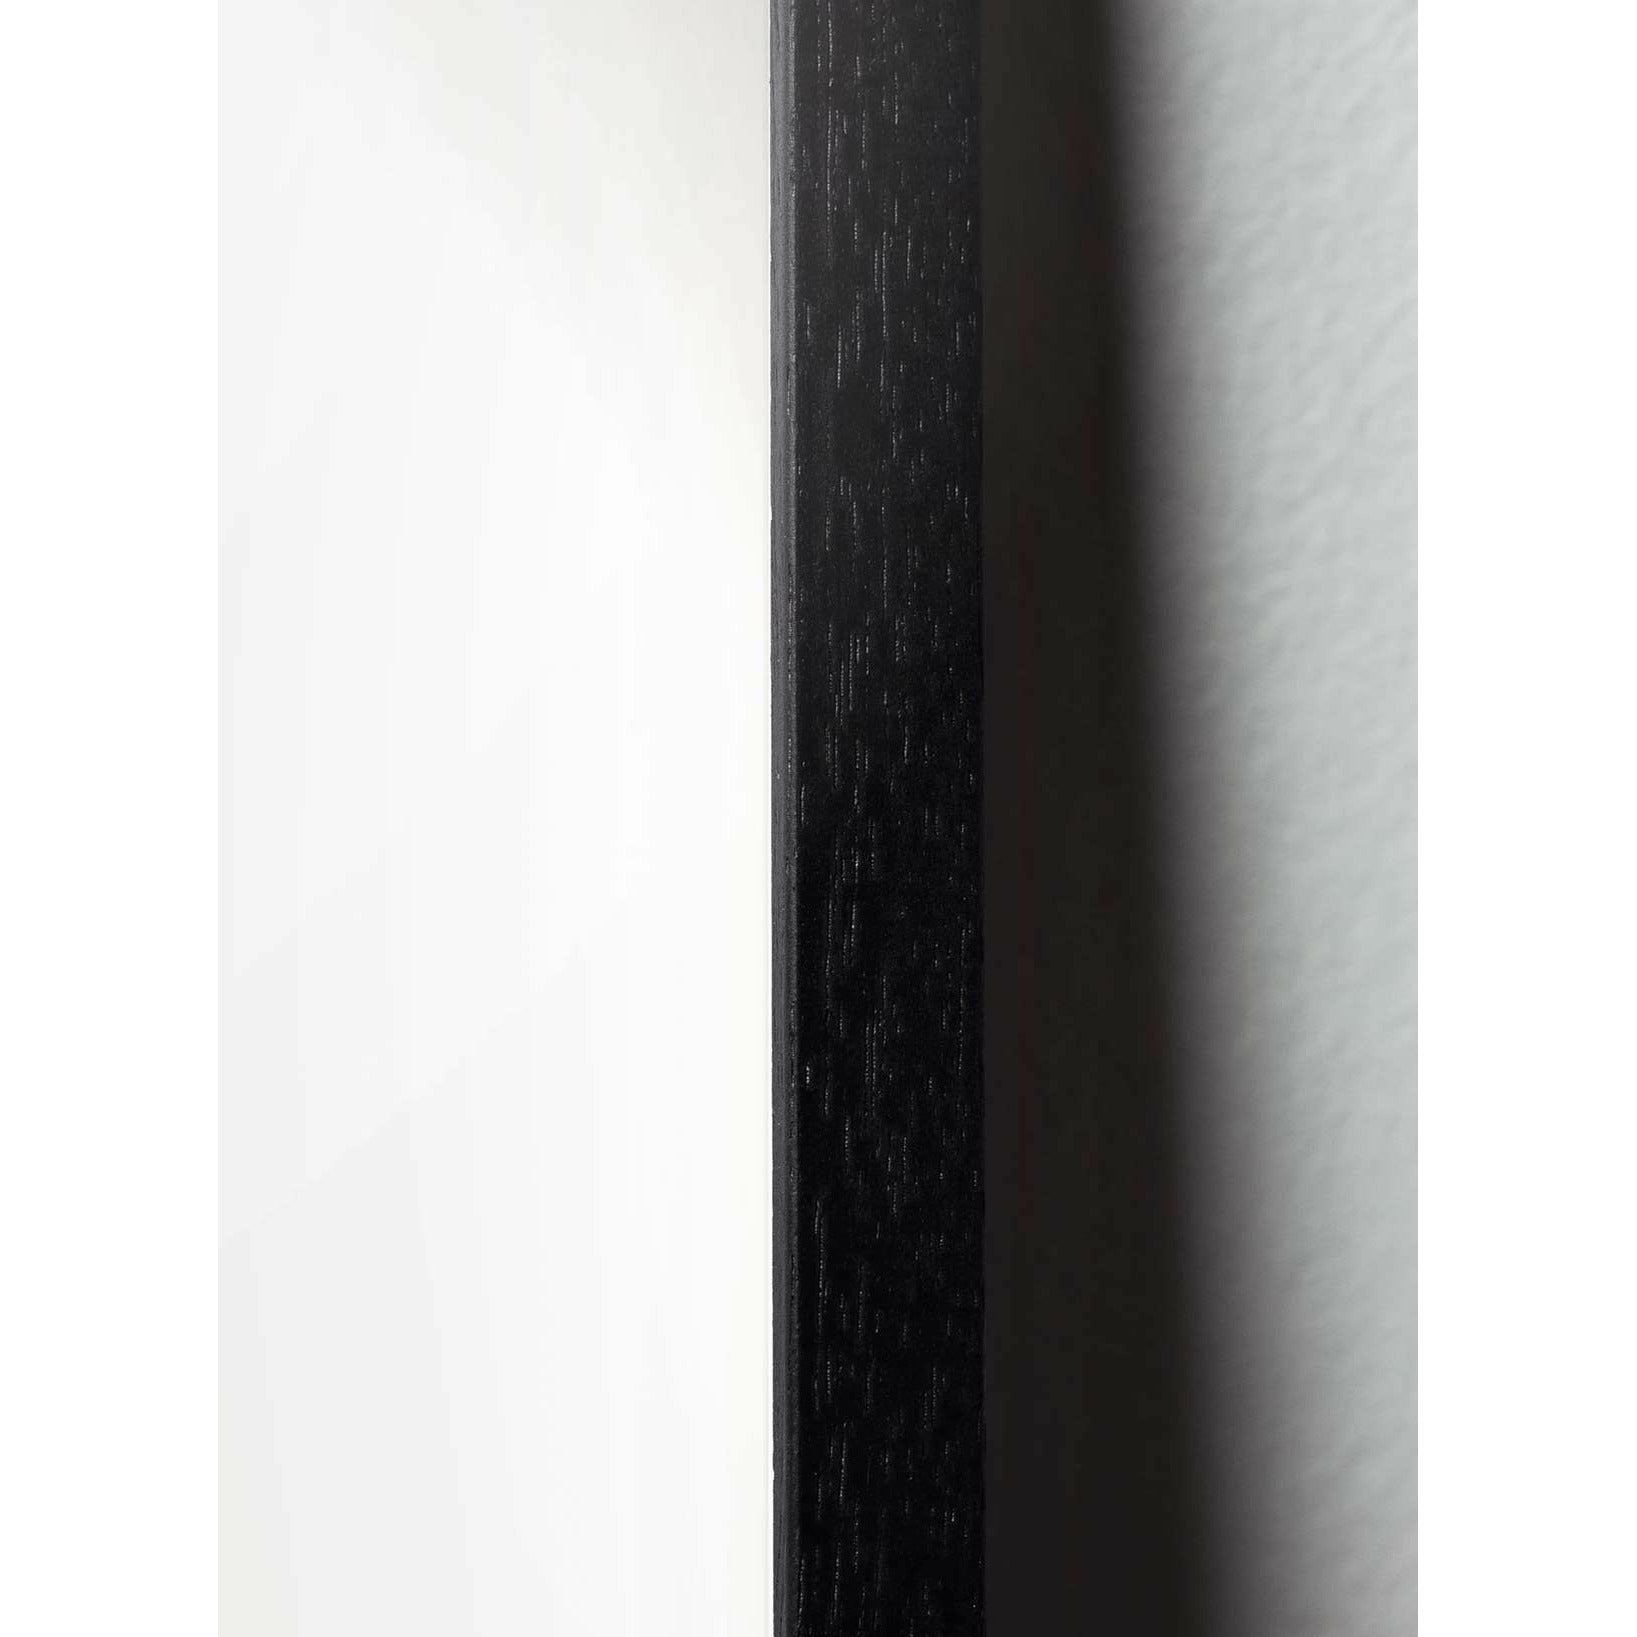 Brainchild Äggdesignikon affisch, ram i svart -målat trä 50x70 cm, grå